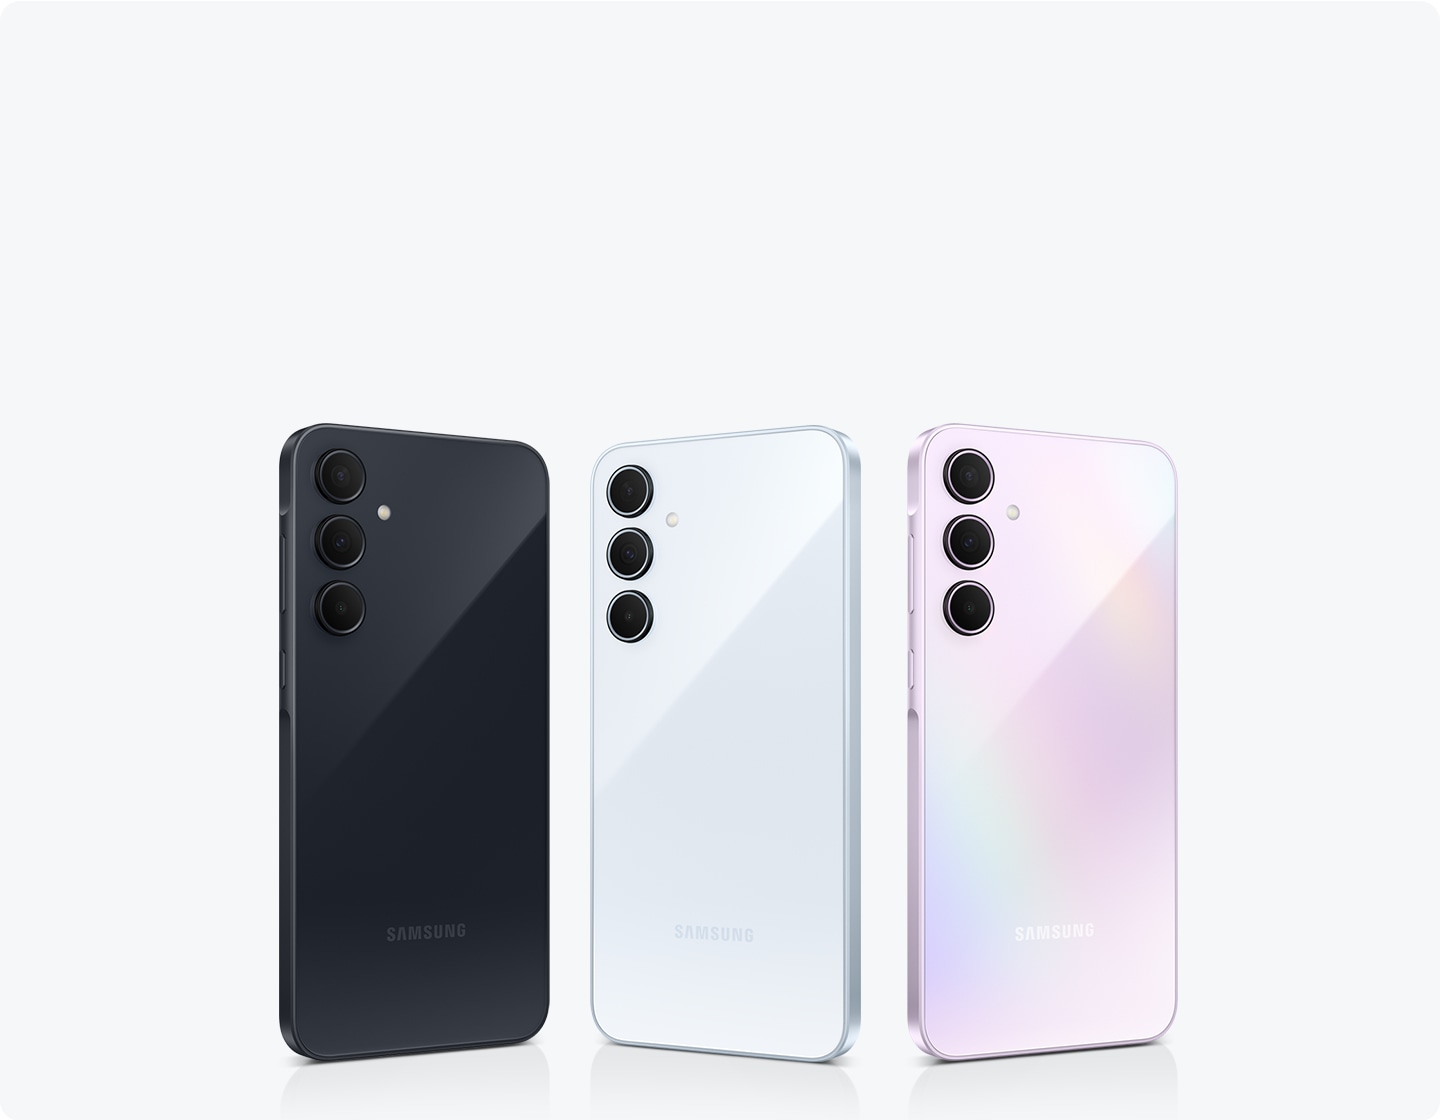 Quatre smartphones Samsung d'affilée avec différentes couleurs : Awesome Navy, Awesome Iceblue, Awesome Lilac et Awesome Lemon. Chaque téléphone dispose d'une disposition à 3 caméras à l'arrière.